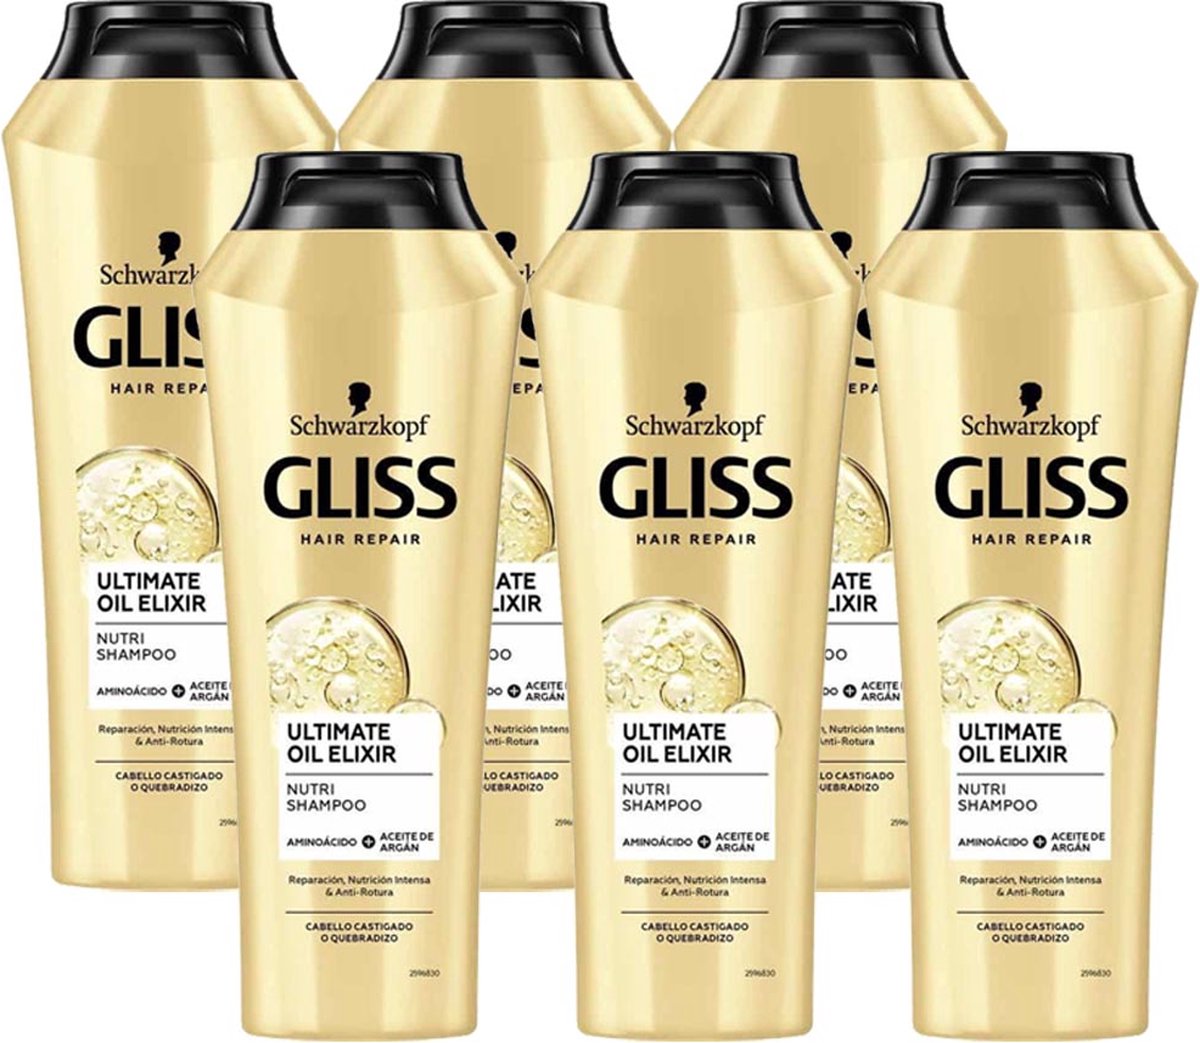 Gliss Kur Shampoo Ultimate Oil Elixir 6 x 250ml - Voordeelverpakking